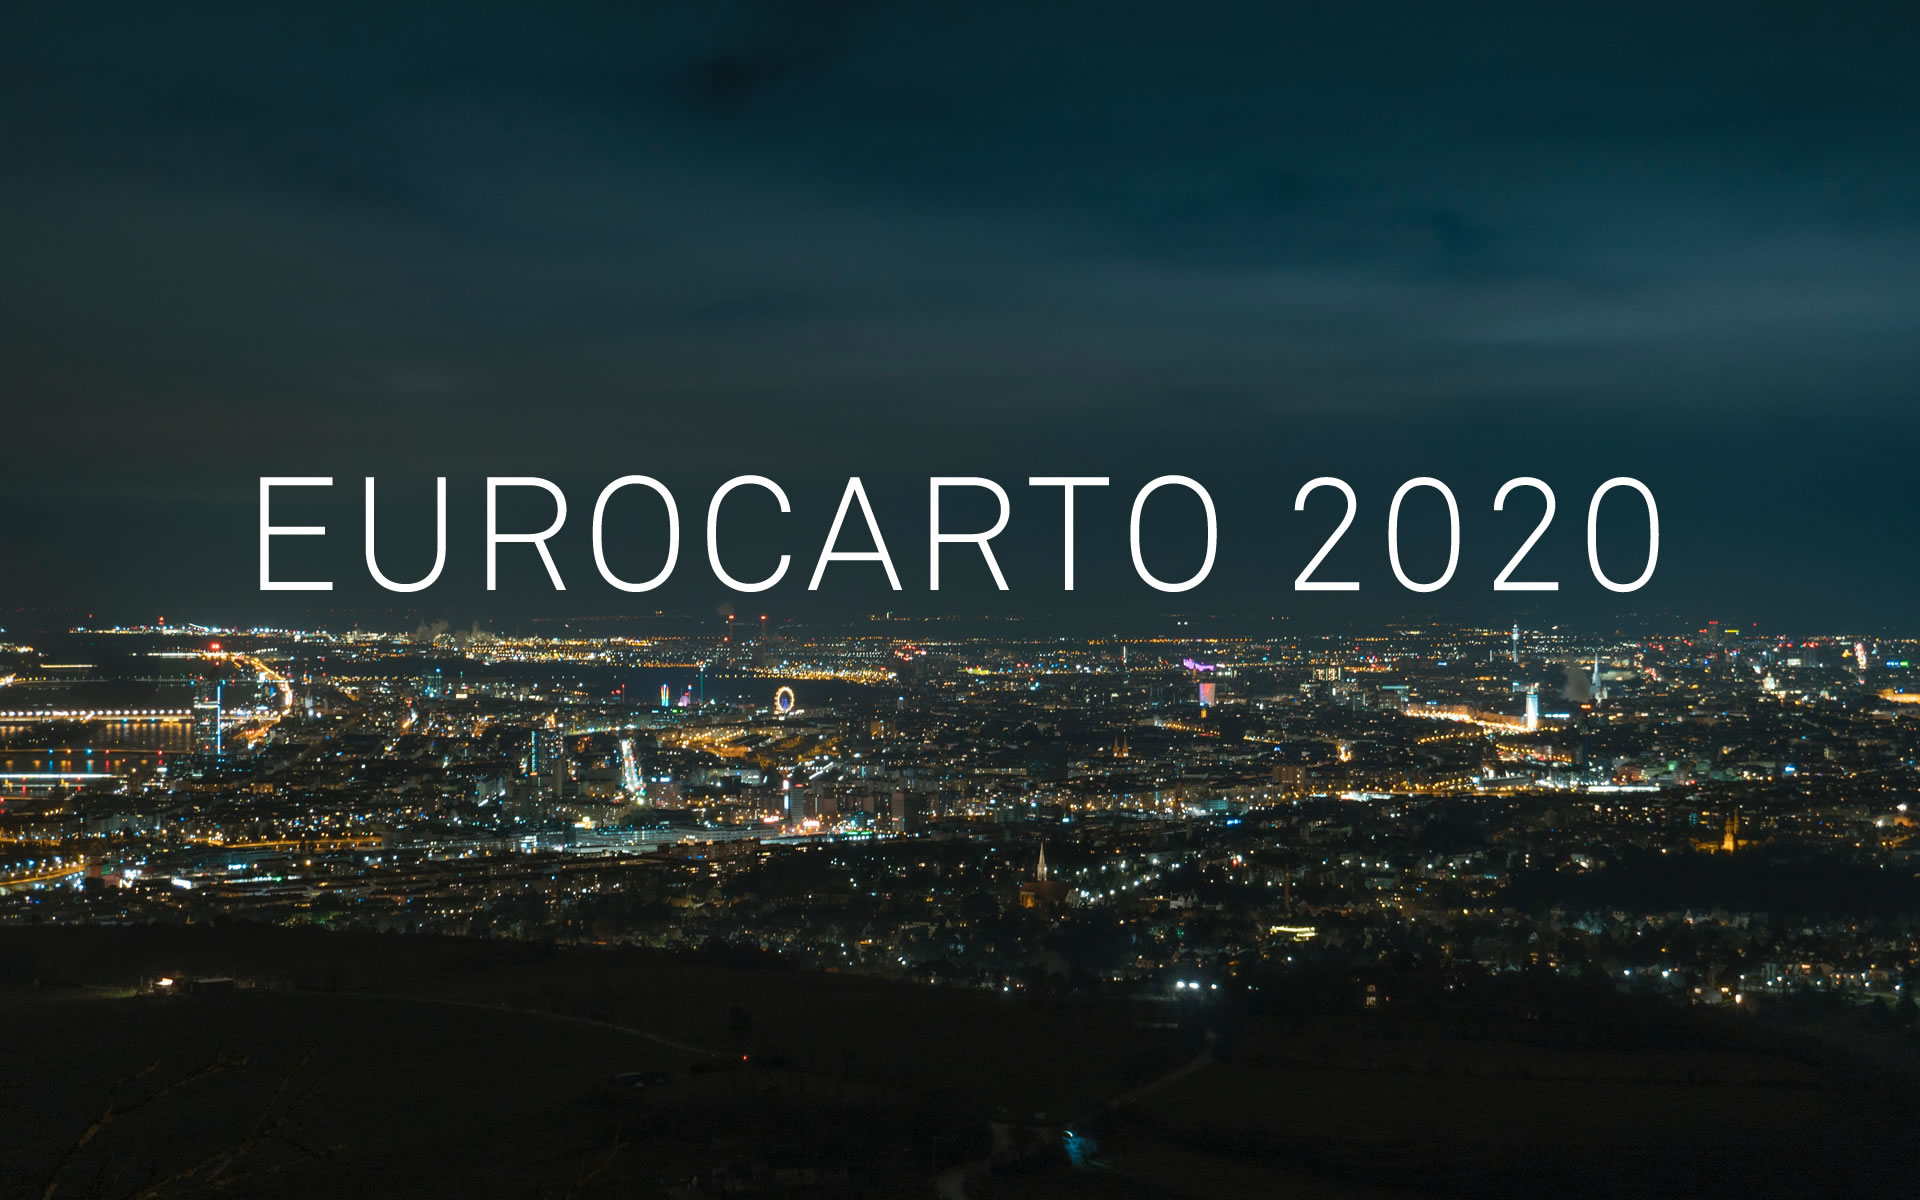 eurocarto-2020-feat